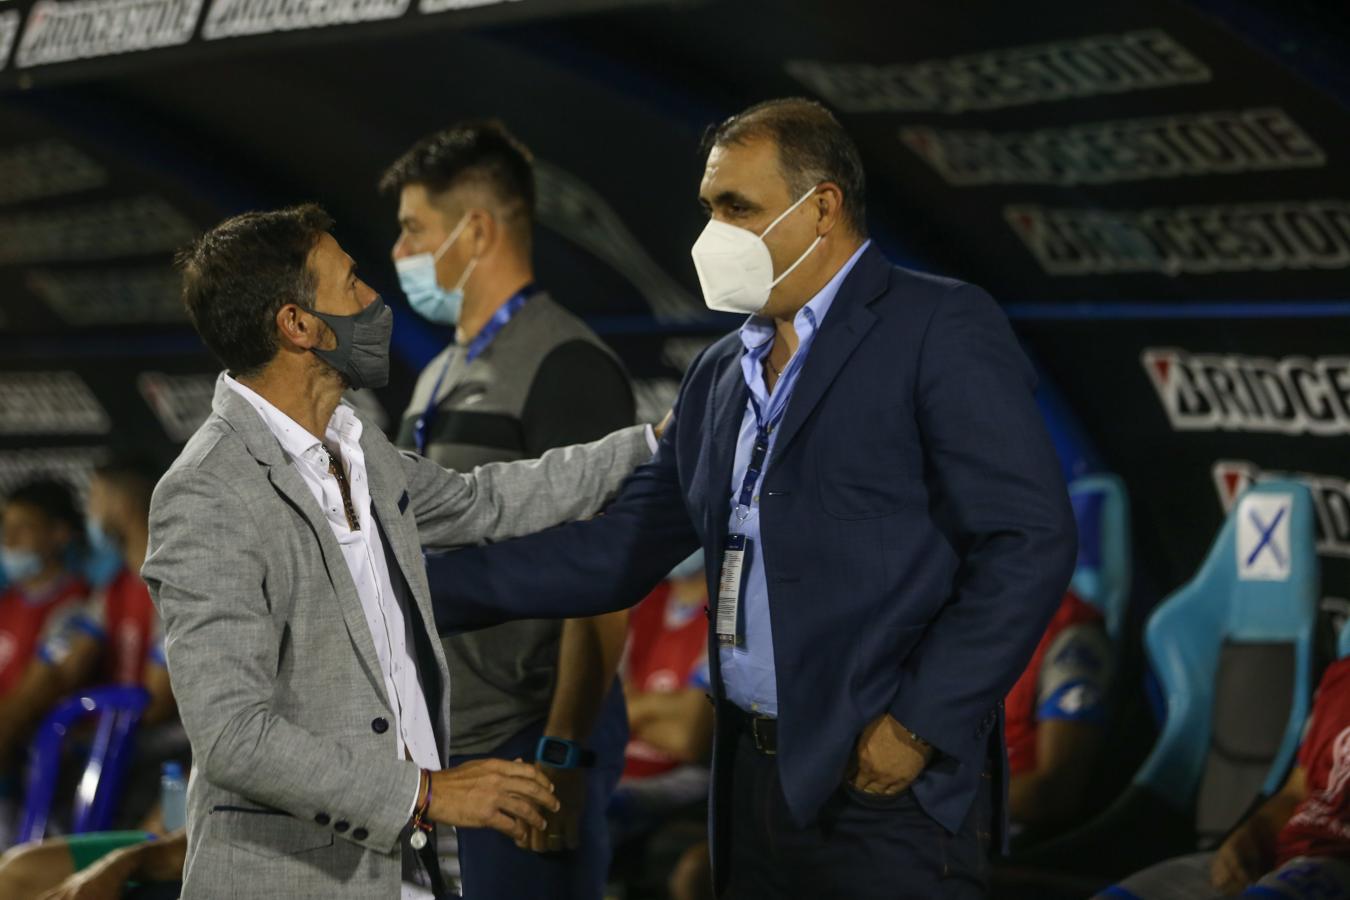 Imagen El Kily González se saluda con el Cabo Sarabia (DT de 12 de Octubre) en la previa del partido. Foto: Staff Images / CONMEBOL